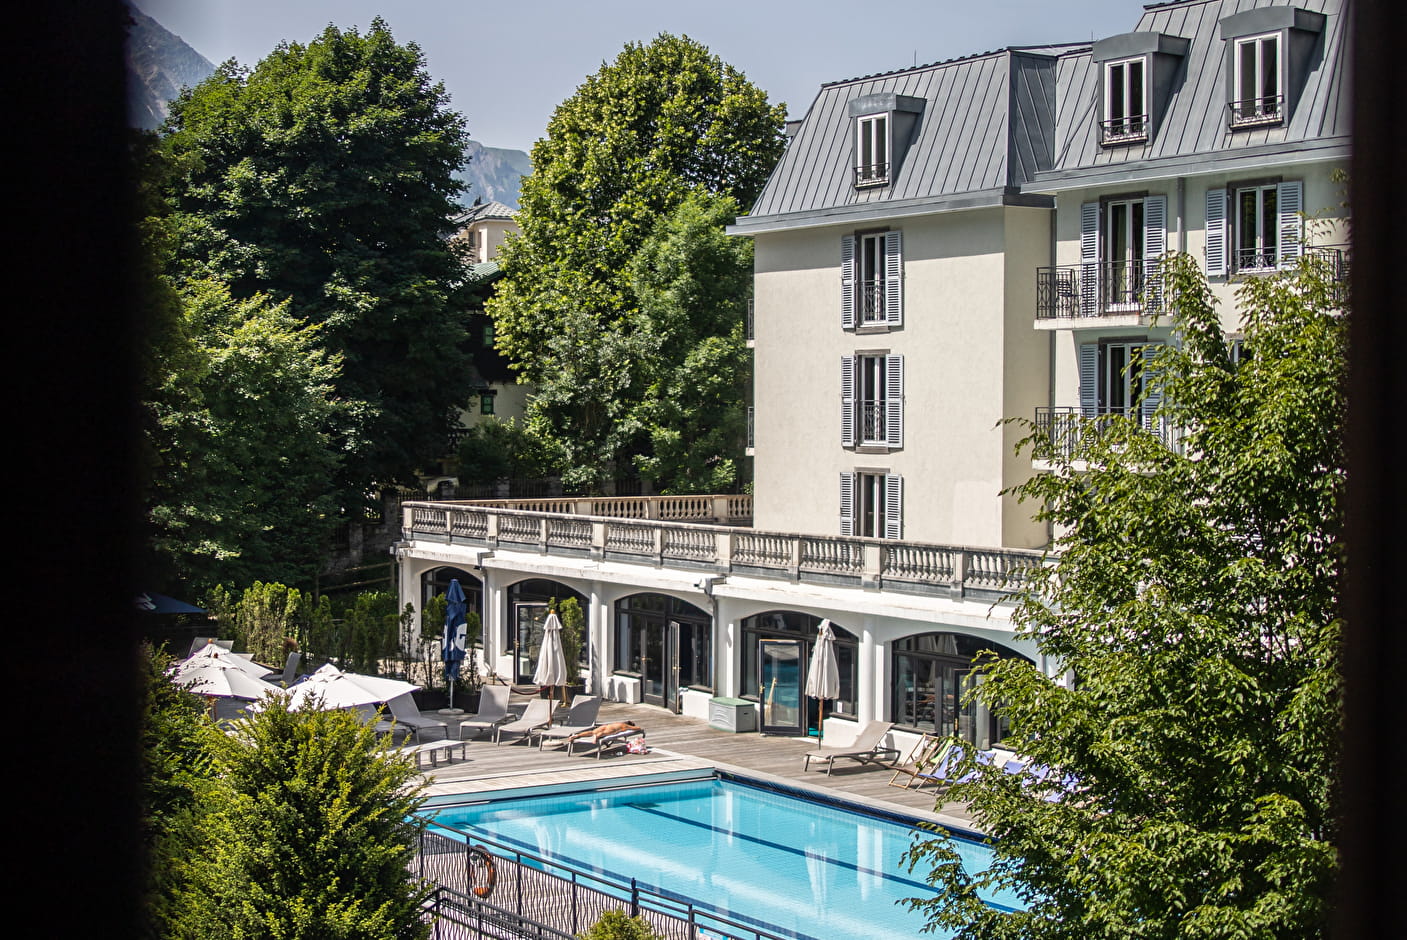 La Folie Douce Hotels, Living Place, Mont Blanc